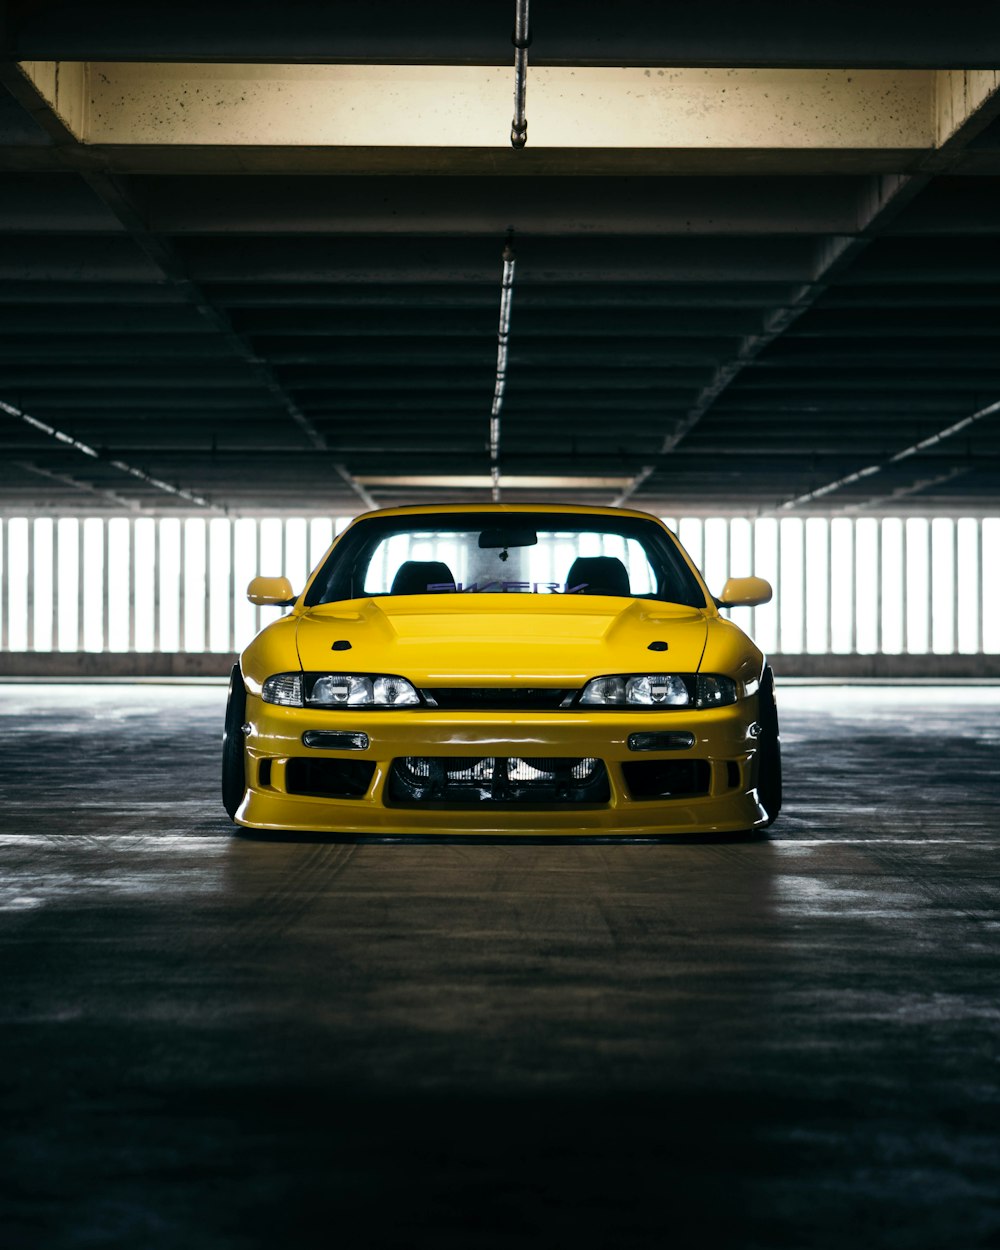 ガレージ内の黄色いスポーツカー駐車場